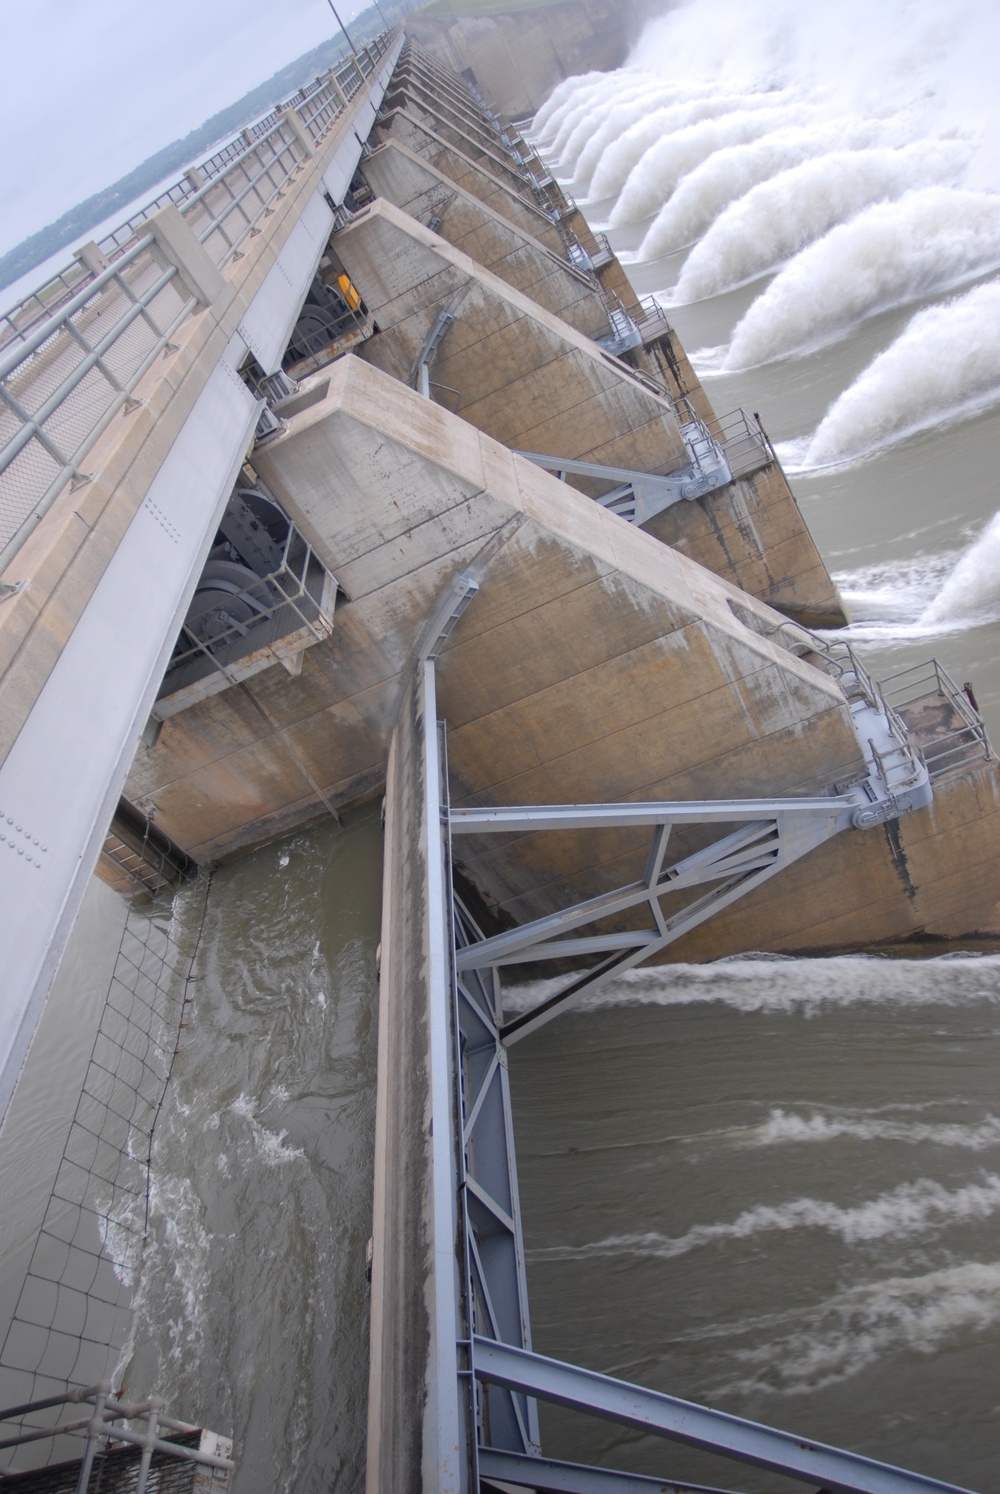 Gavins Point dam sustains 150,000 CFS